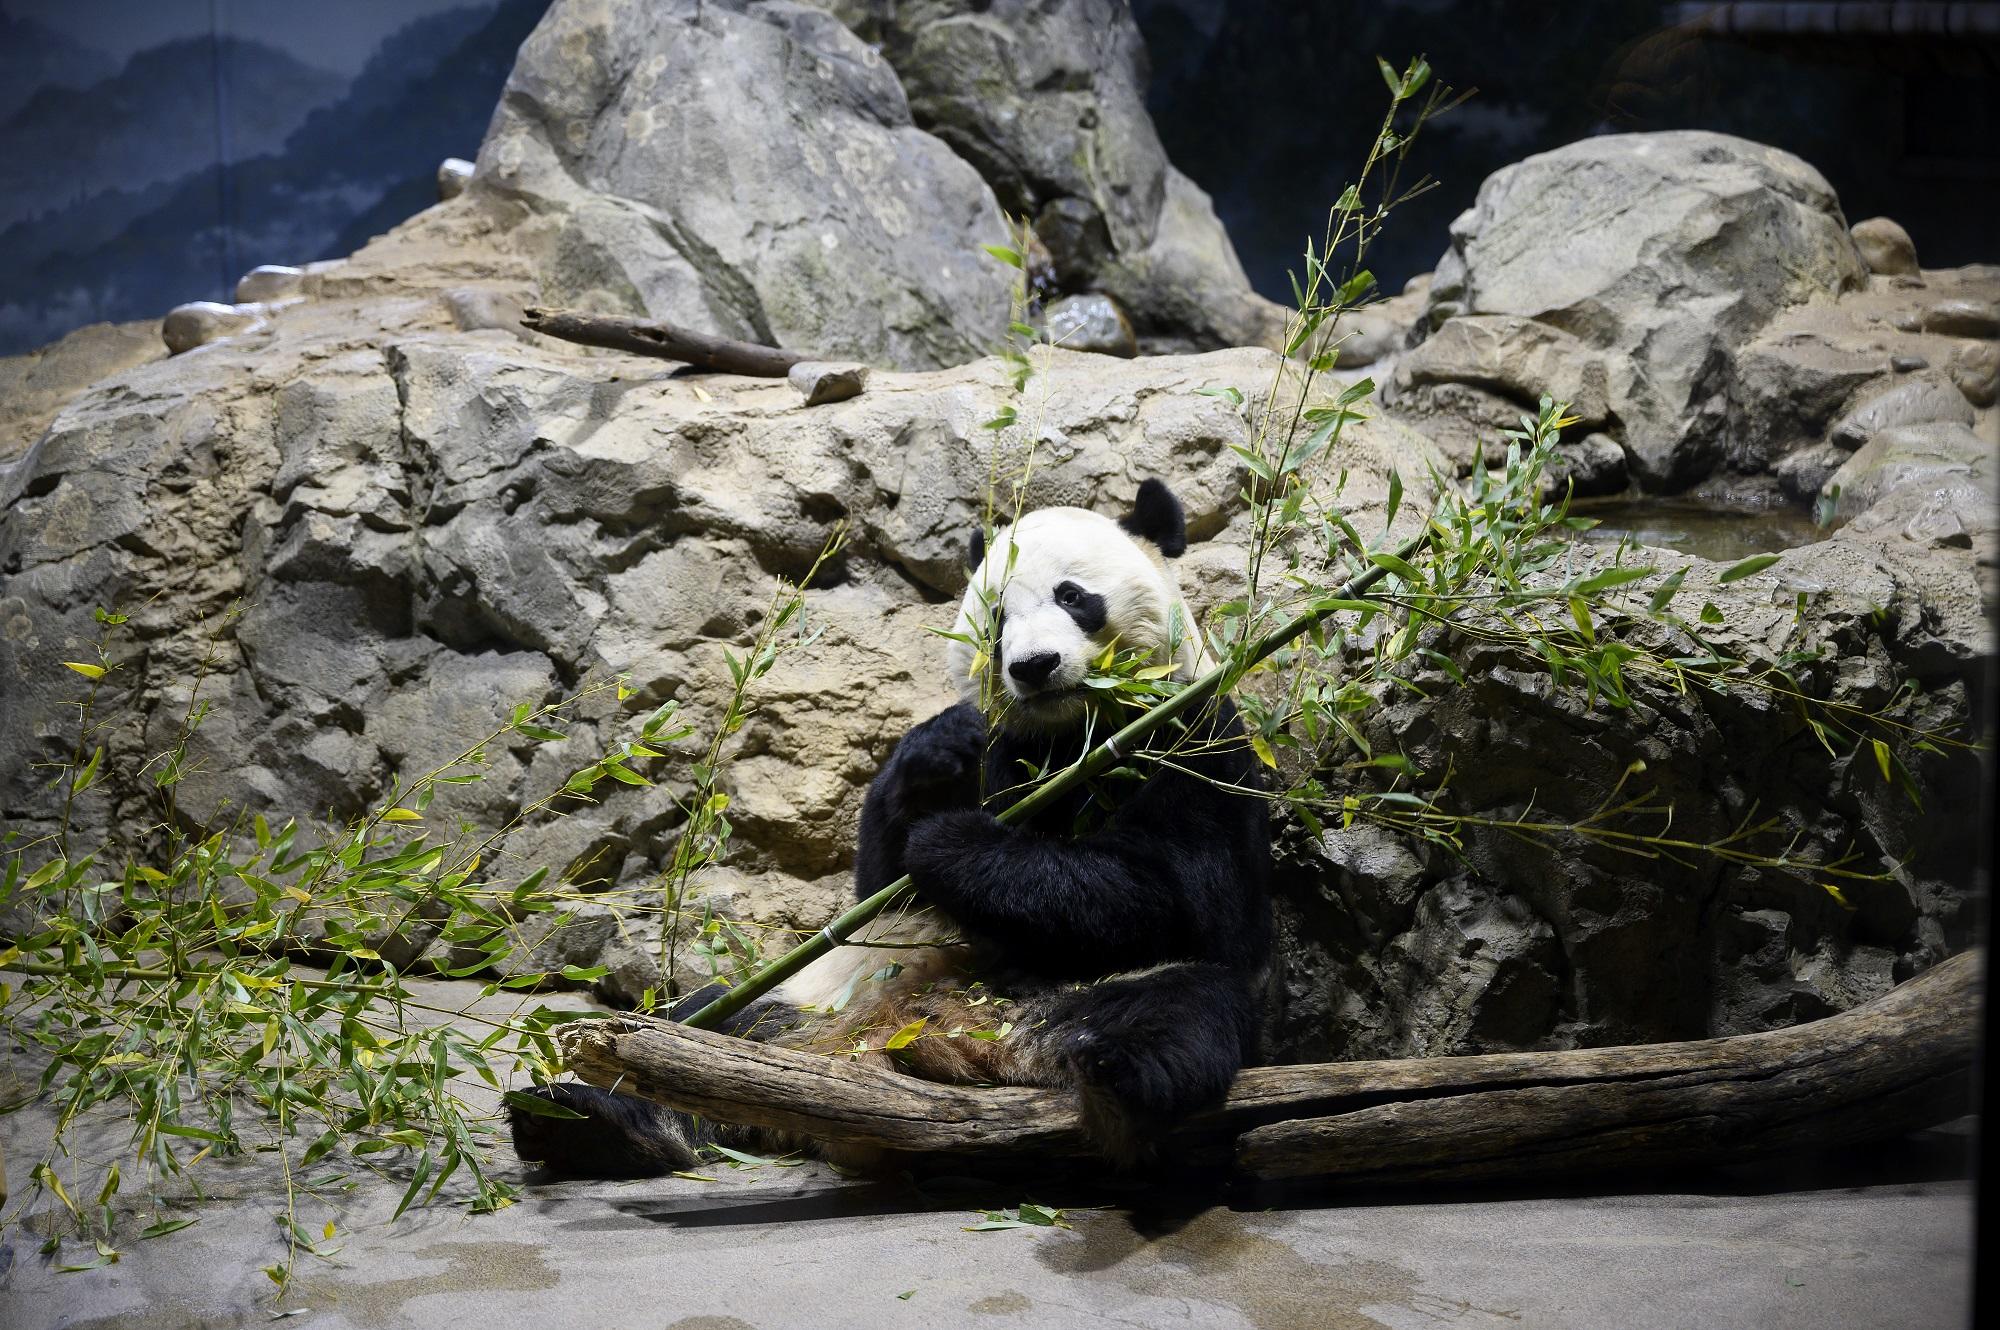 الباندا "باي باي" يأكل الخيزران في حديقة الحيوانات الوطنية قبل أن يغادر إلى موطنه الأصلي الصين. 14 تشرين ثاني/ نوفمبر 2019. جيم واتسون/ أ ف ب